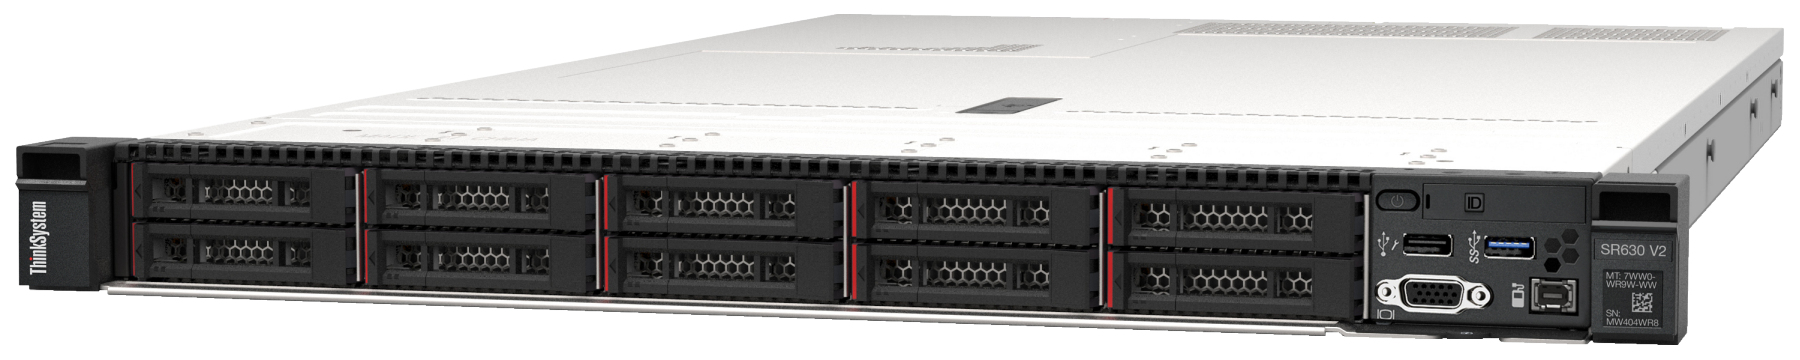 Сервер Lenovo ThinkSystem SR630 V2 (7Z71A05EEA). Фиксированная комплектация сервера